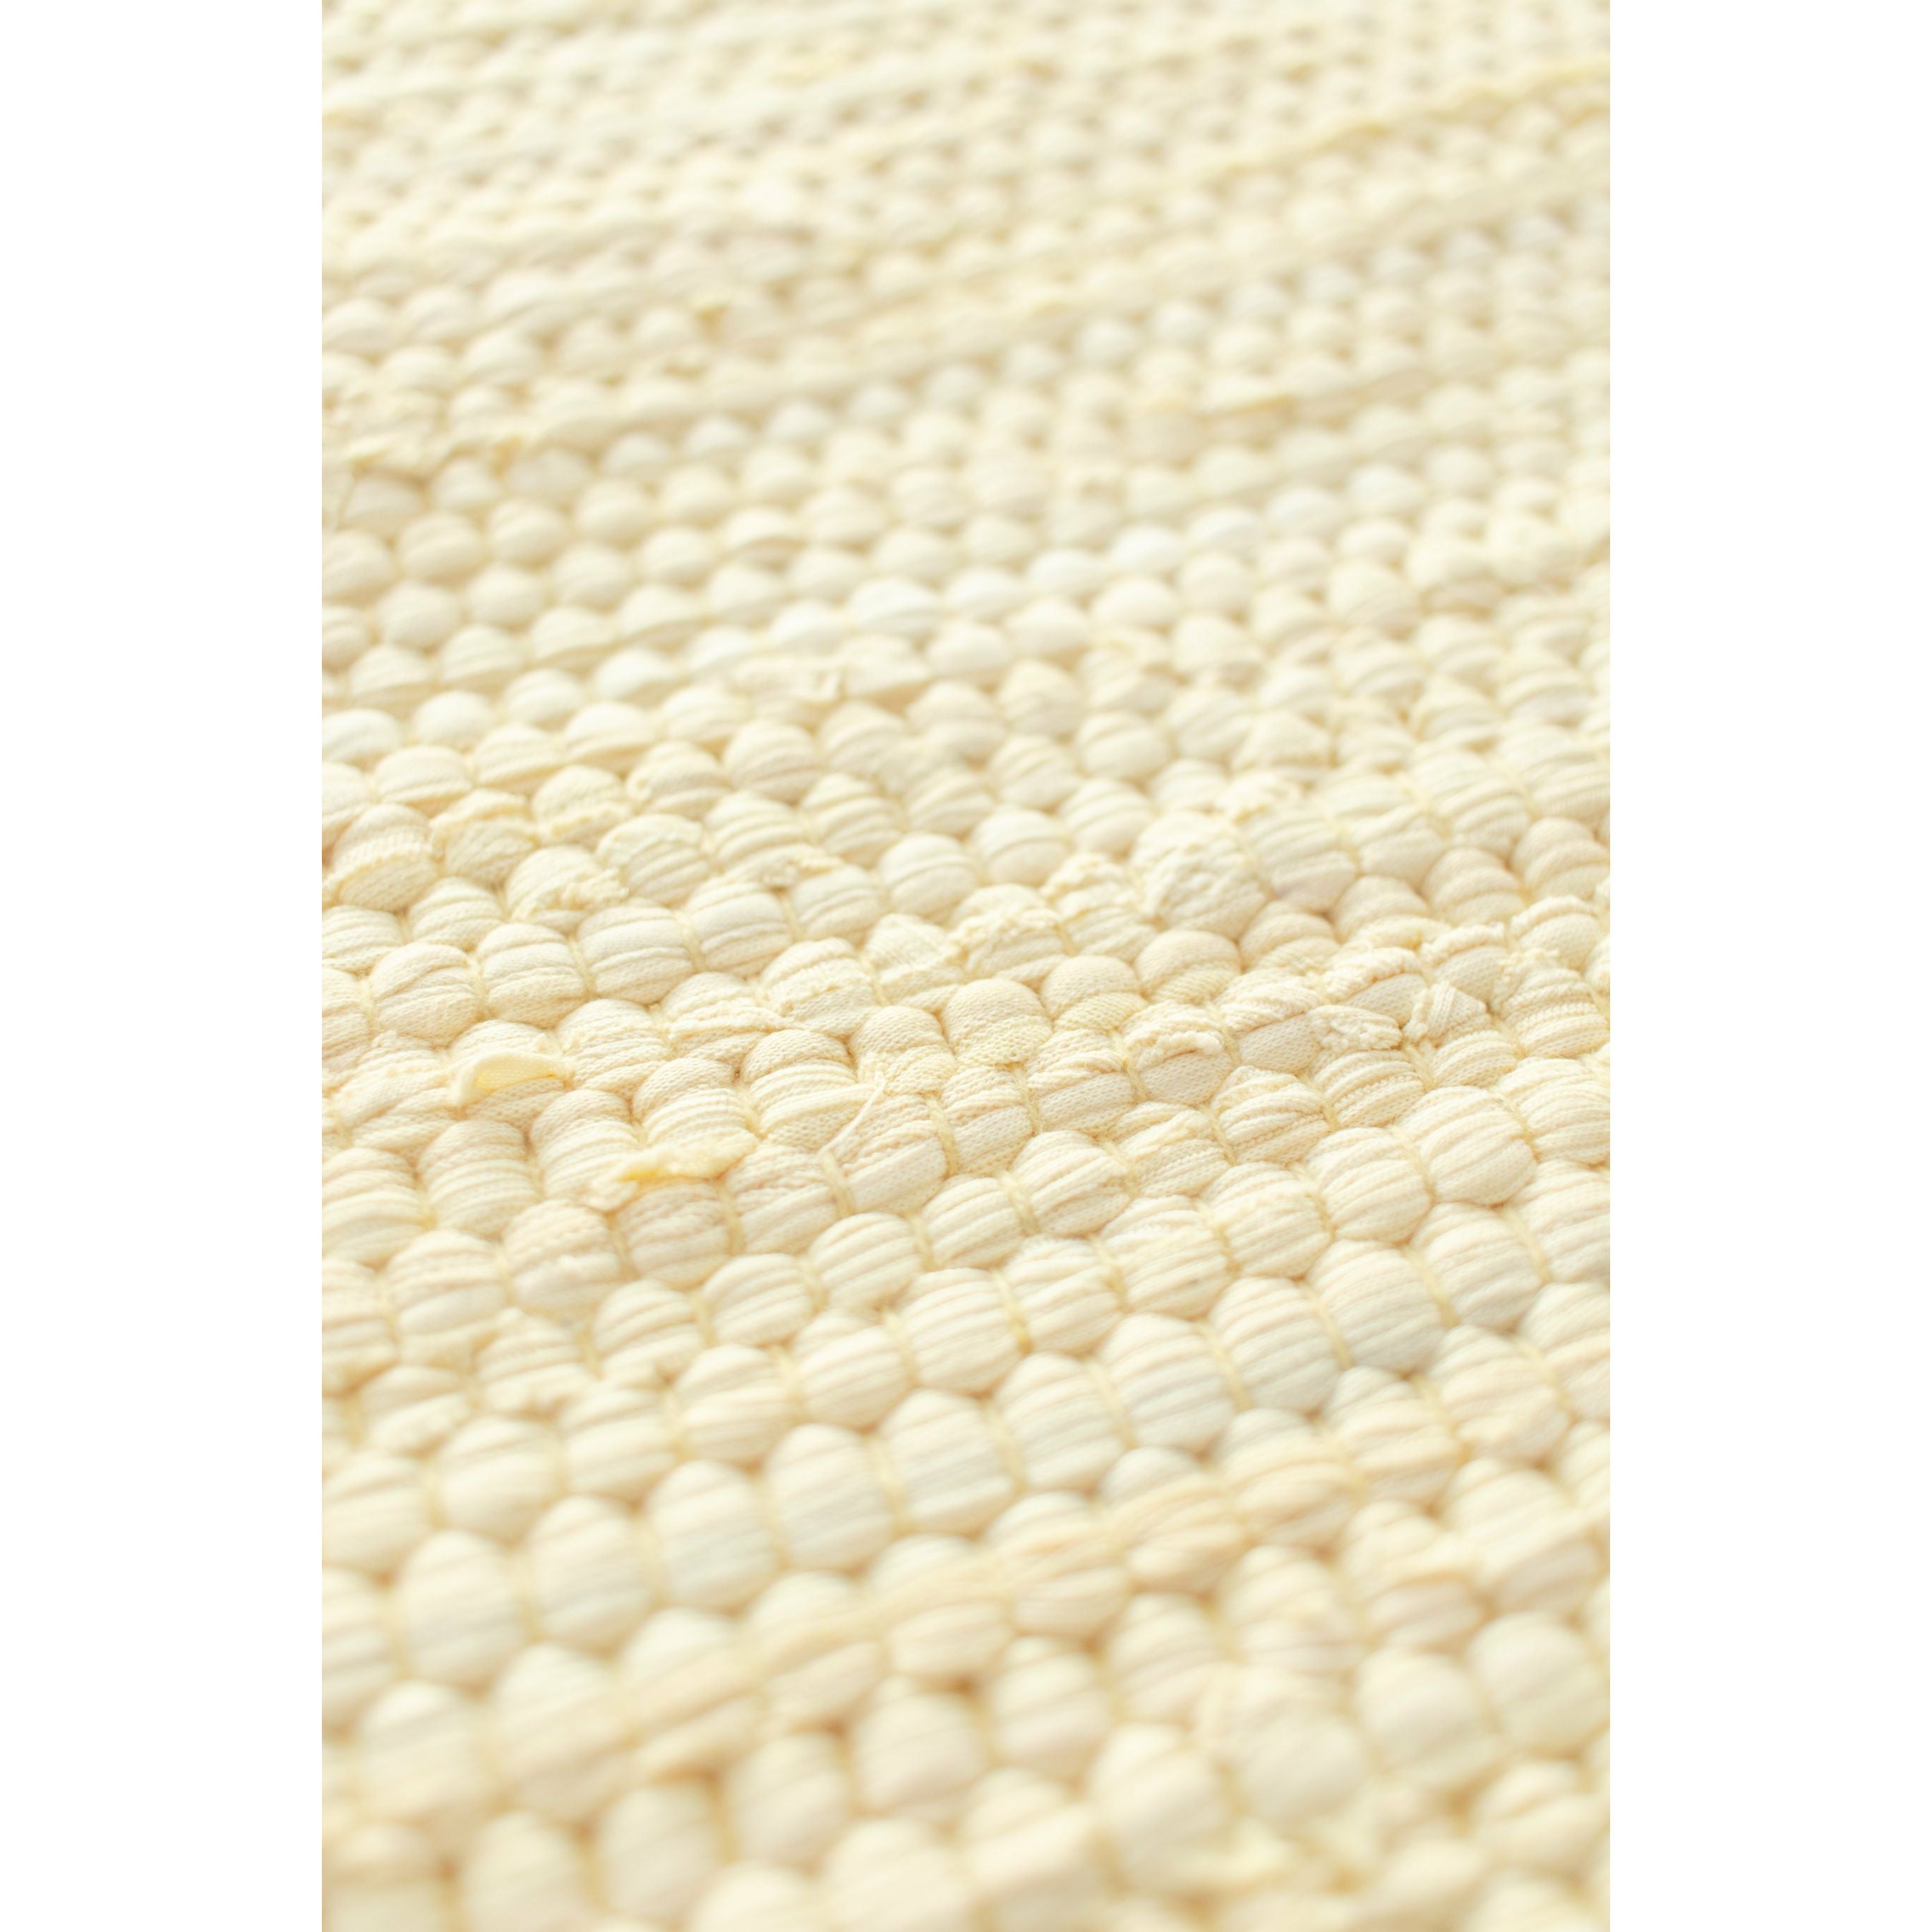 Rug Solid Katoenen tapijt 90x60 cm, citroen